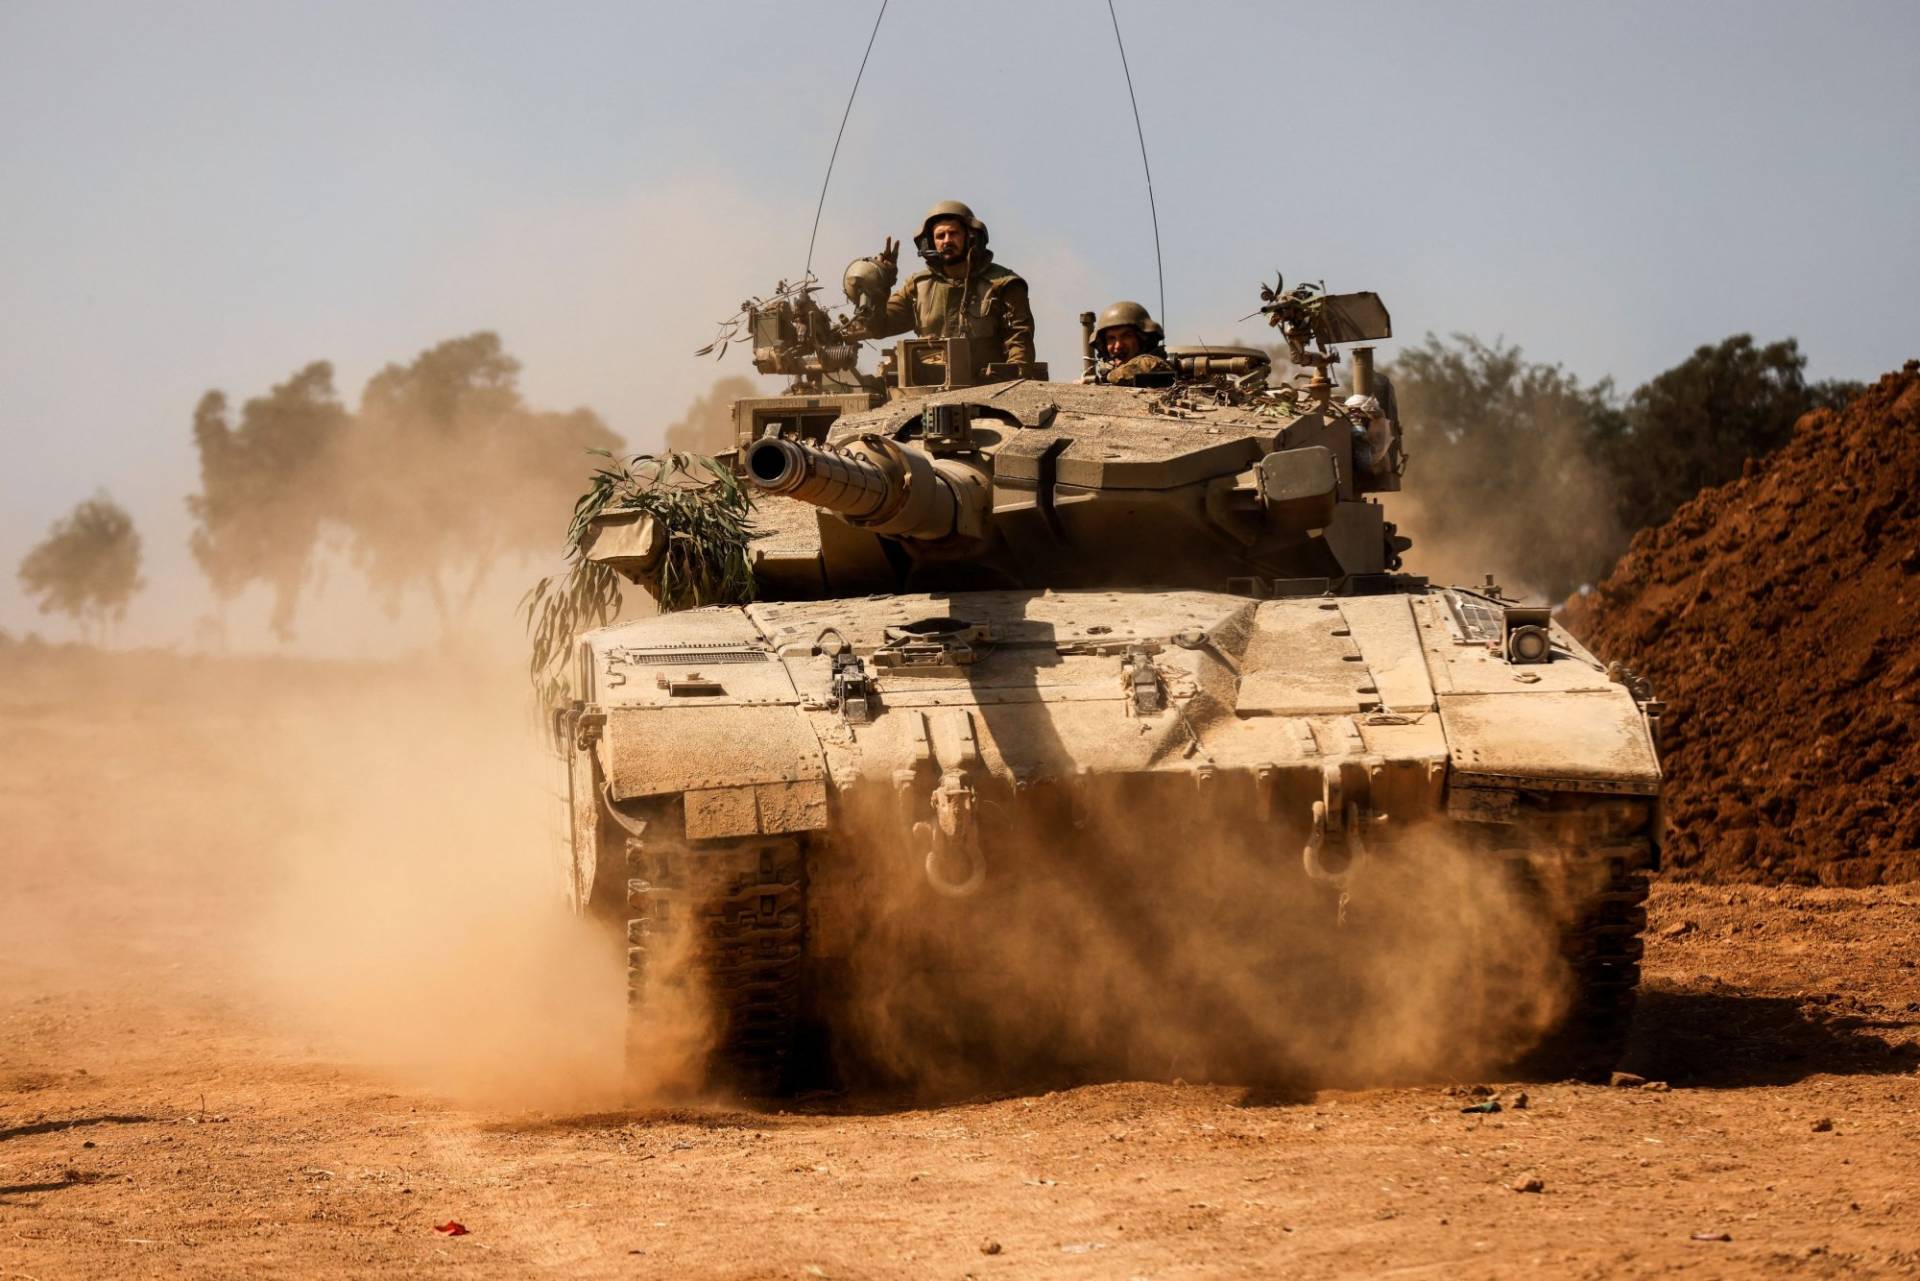 Πόλεμος στο Ισραήλ: Την εντολή περιμένει ο στρατός για την επίθεση – Αλληλοκατηγορούνται για φρικαλεότητες Ισραήλ και Χαμάς